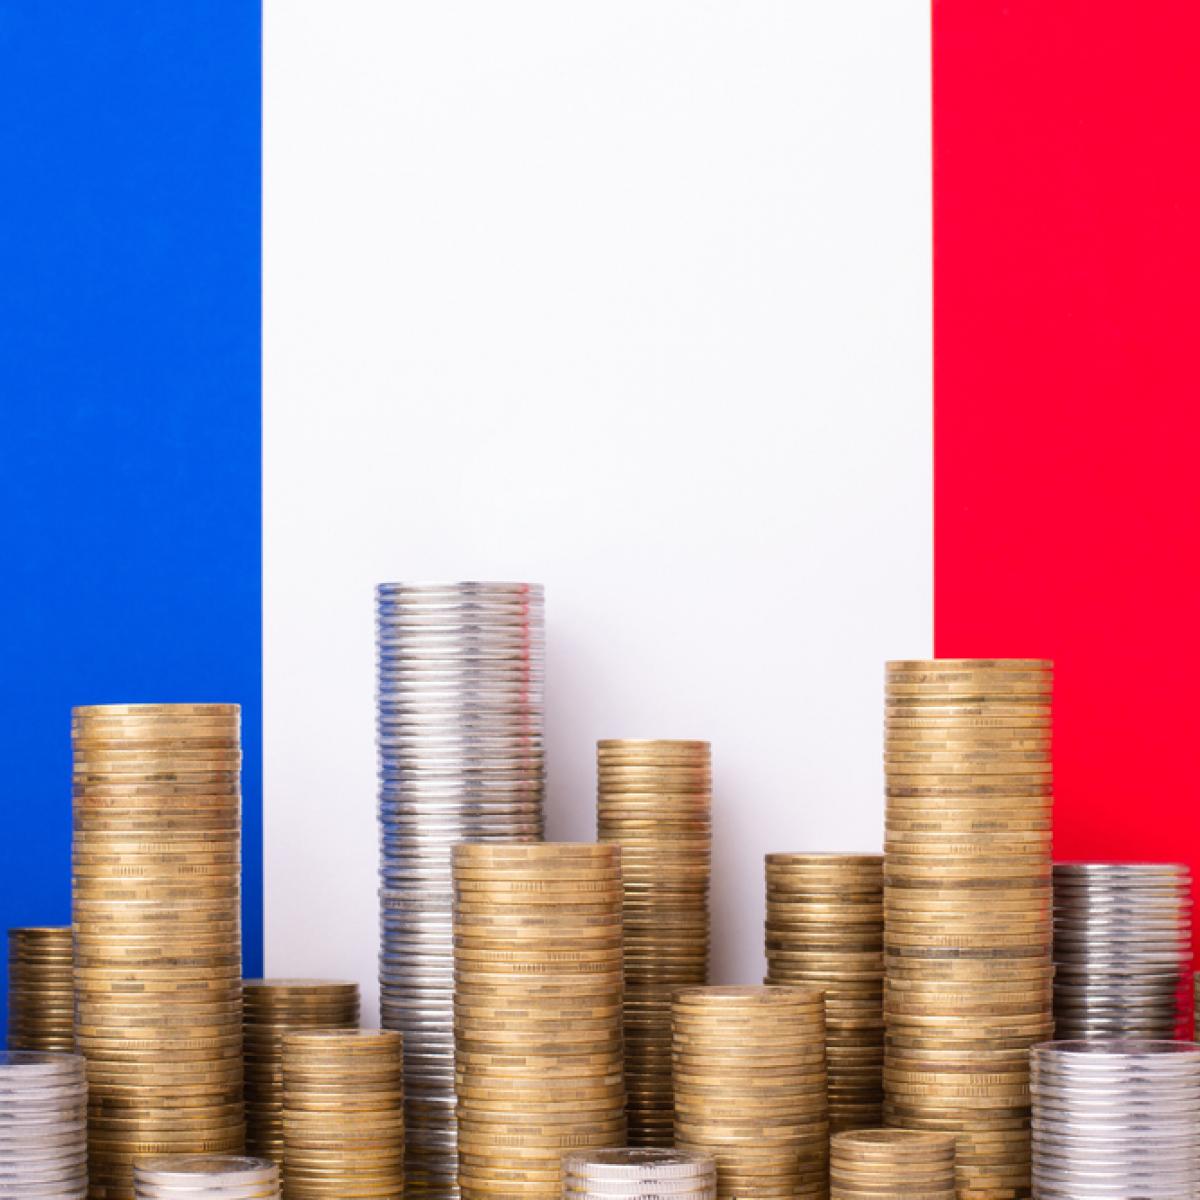 Η Γαλλία θα δανειστεί 270 δισεκατομμύρια ευρώ από τις χρηματαγορές